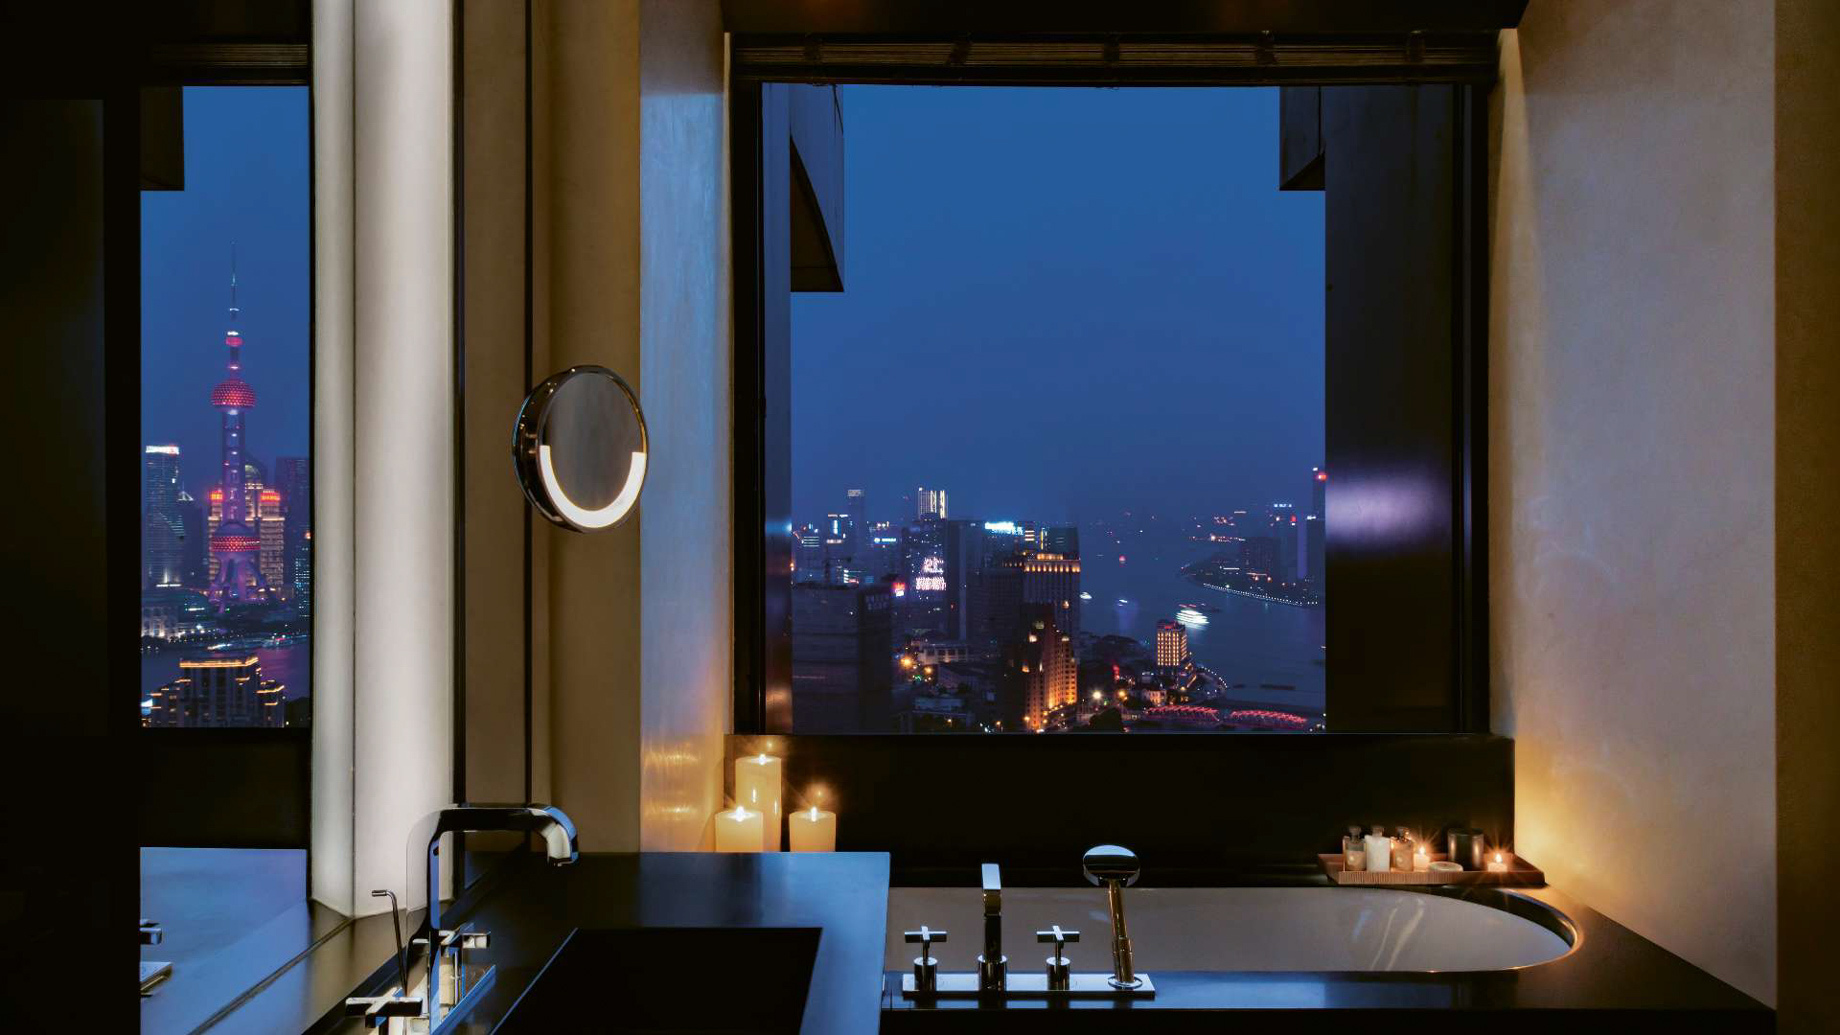 Bvlgari Hotel Shanghai - Shanghai, China - Suite Bathroom Night View